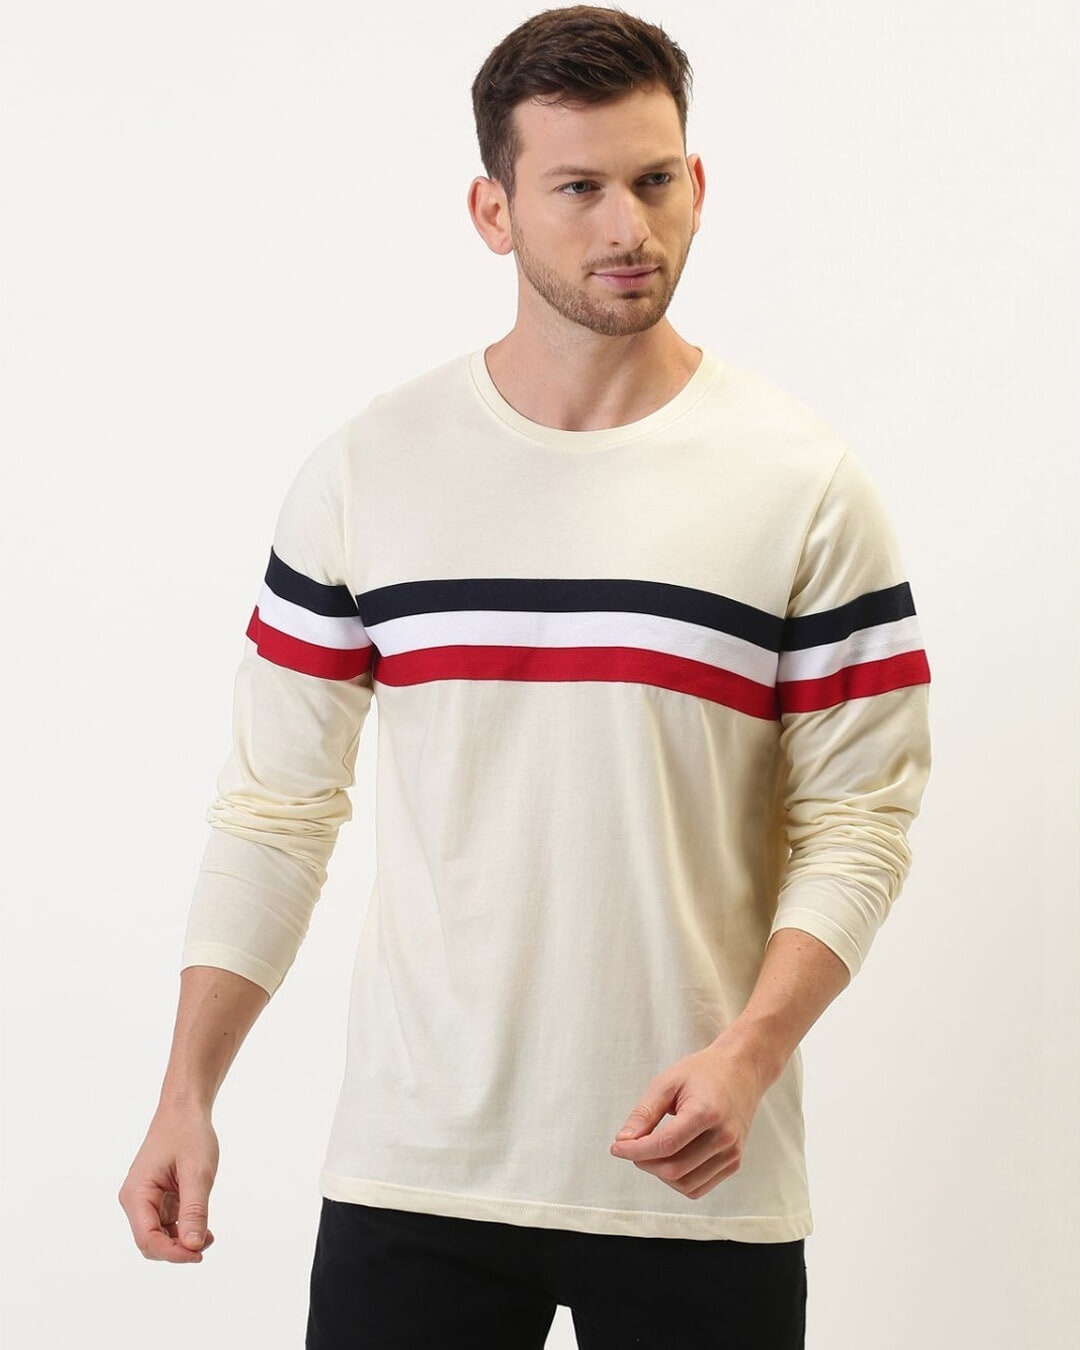 Shop Men's White Striped T-shirt